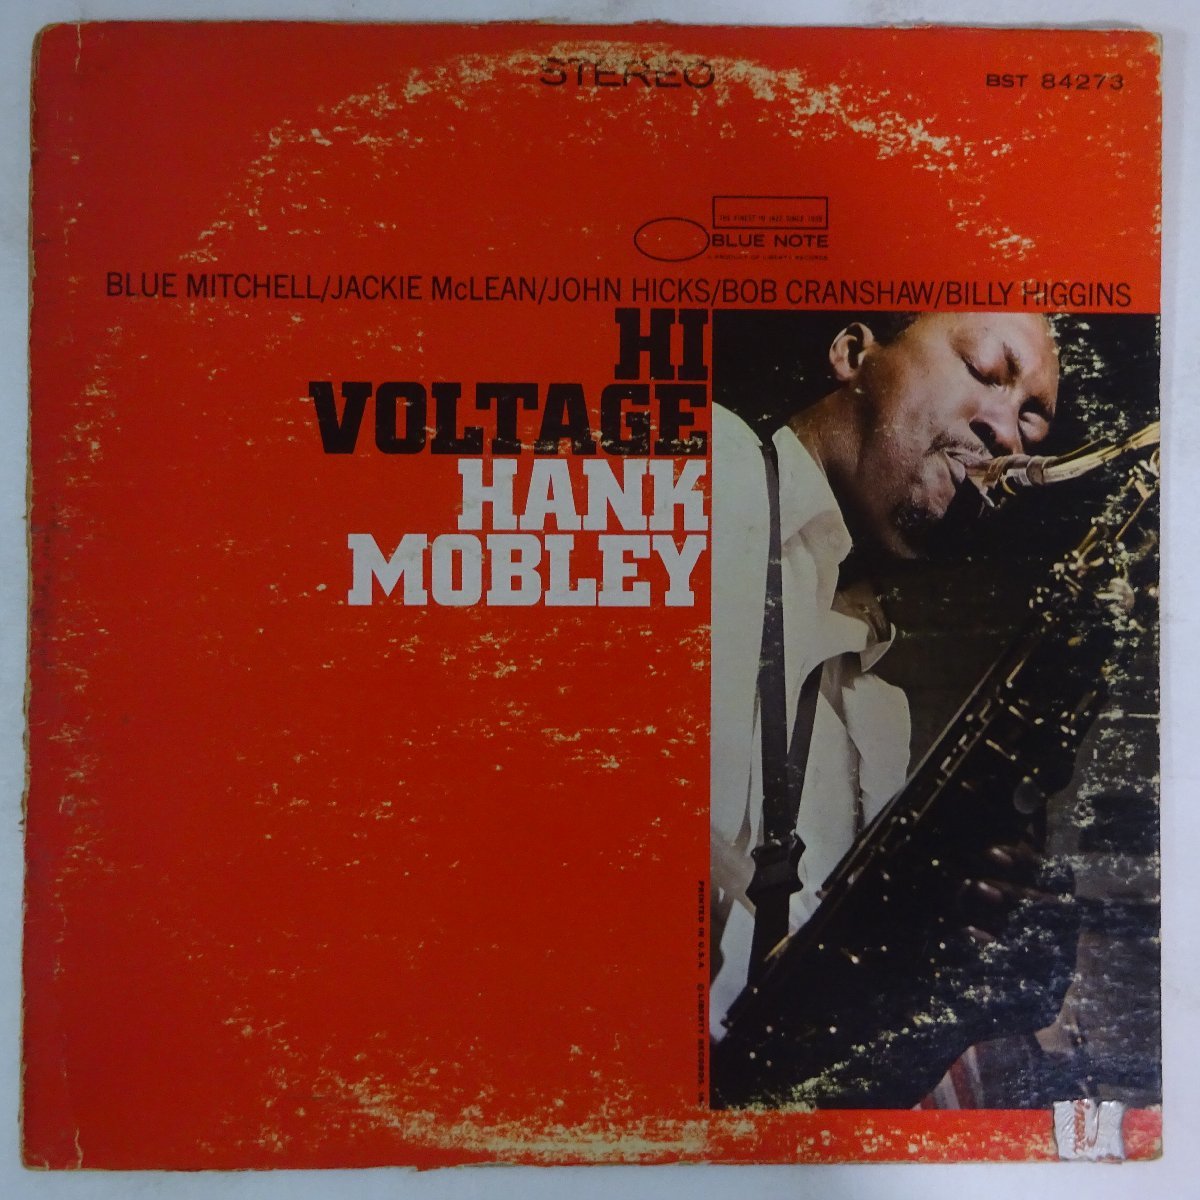 11174856;【US盤/Blue Note/Liberty/VANGELDER刻印】Hank Mobley / Hi Voltage_画像1